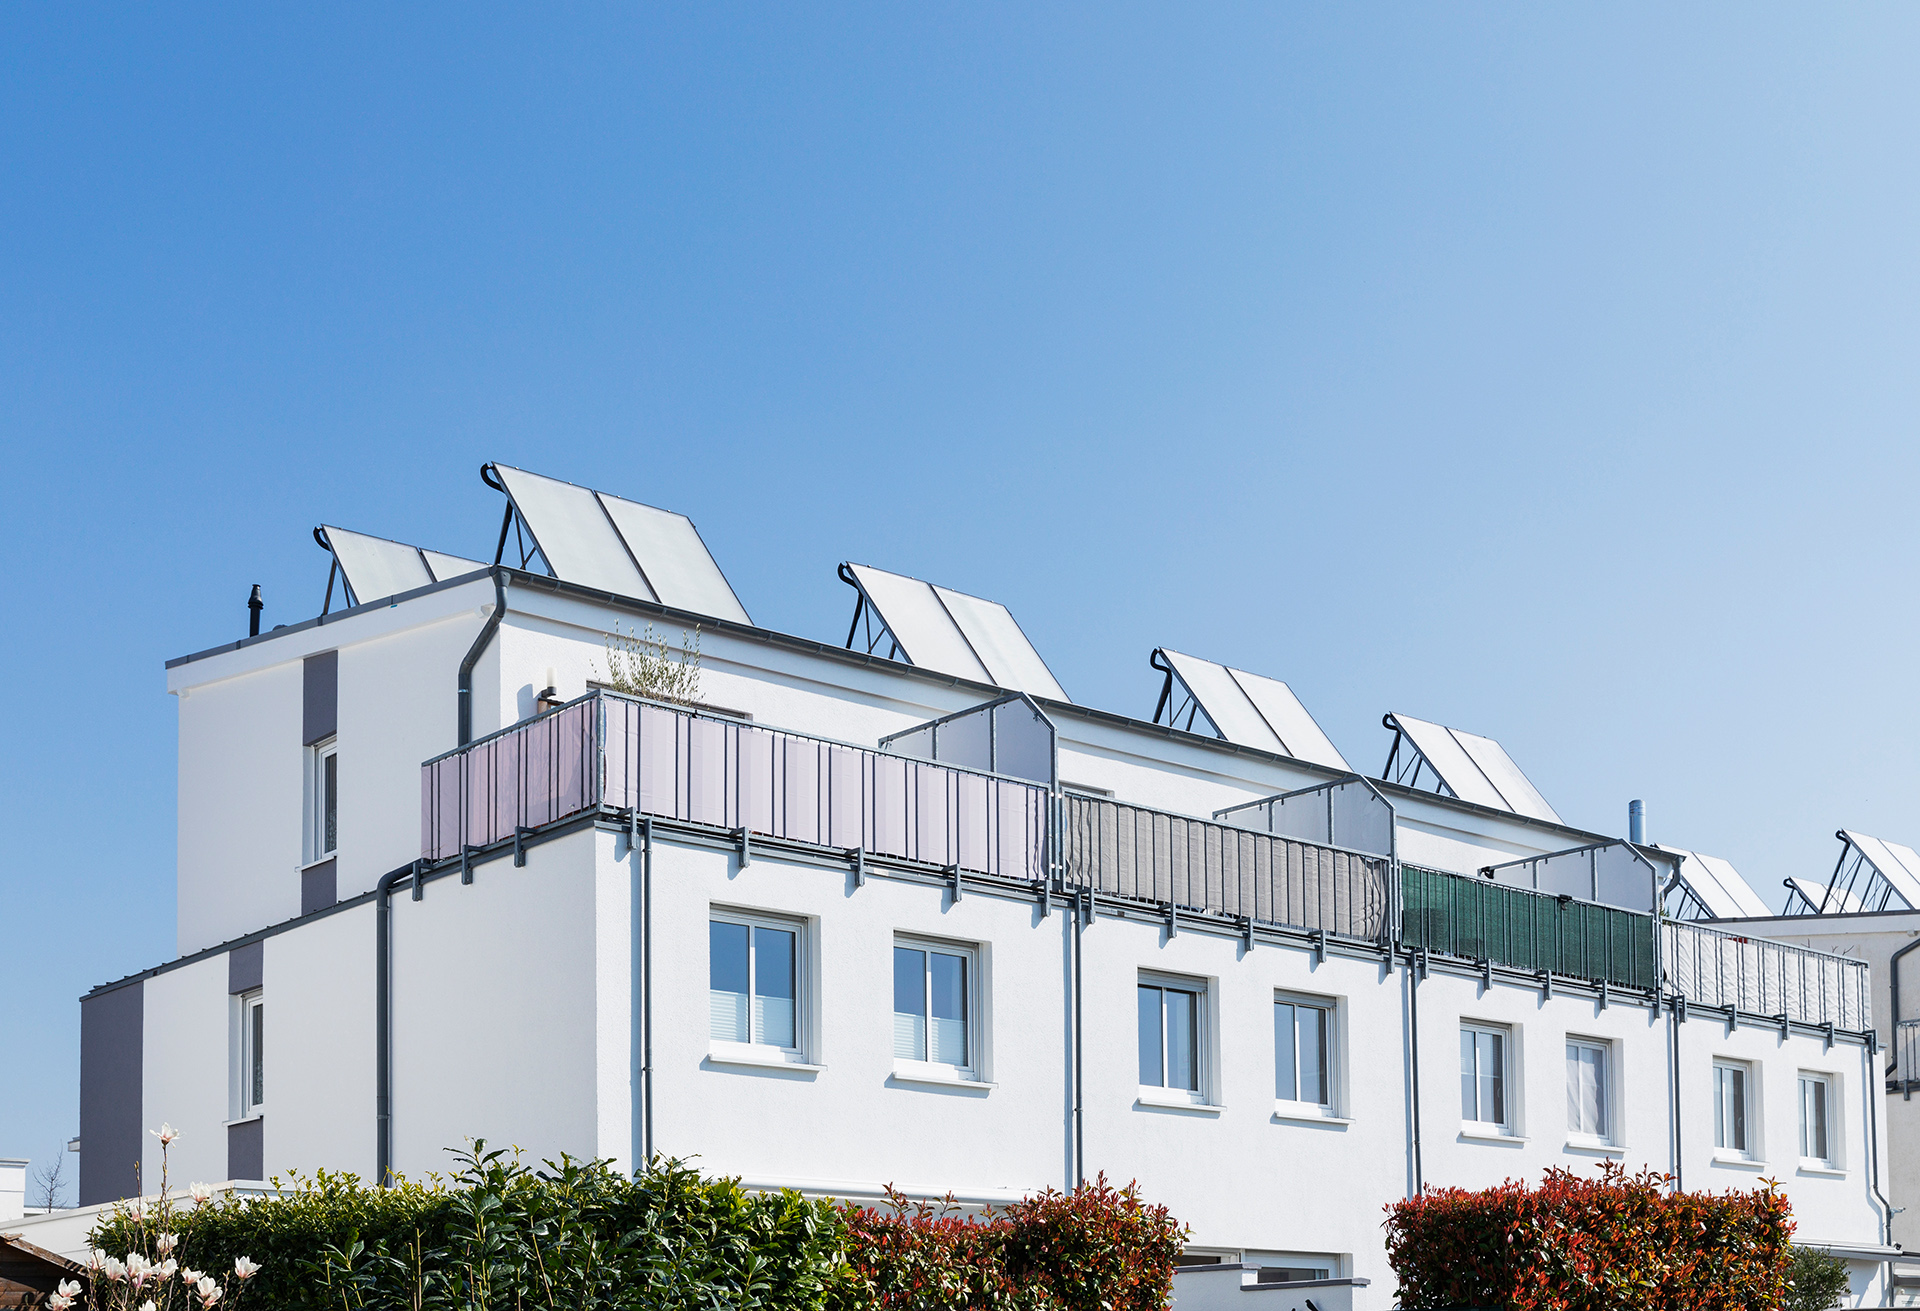 Eine moderne Wohnanlage bestehend aus mehreren Reihenhäusern mit Balkonen. Auf den Dächern sind Solarmodule installiert. Vor der Wohnanlage stehen grün-rote Büsche.